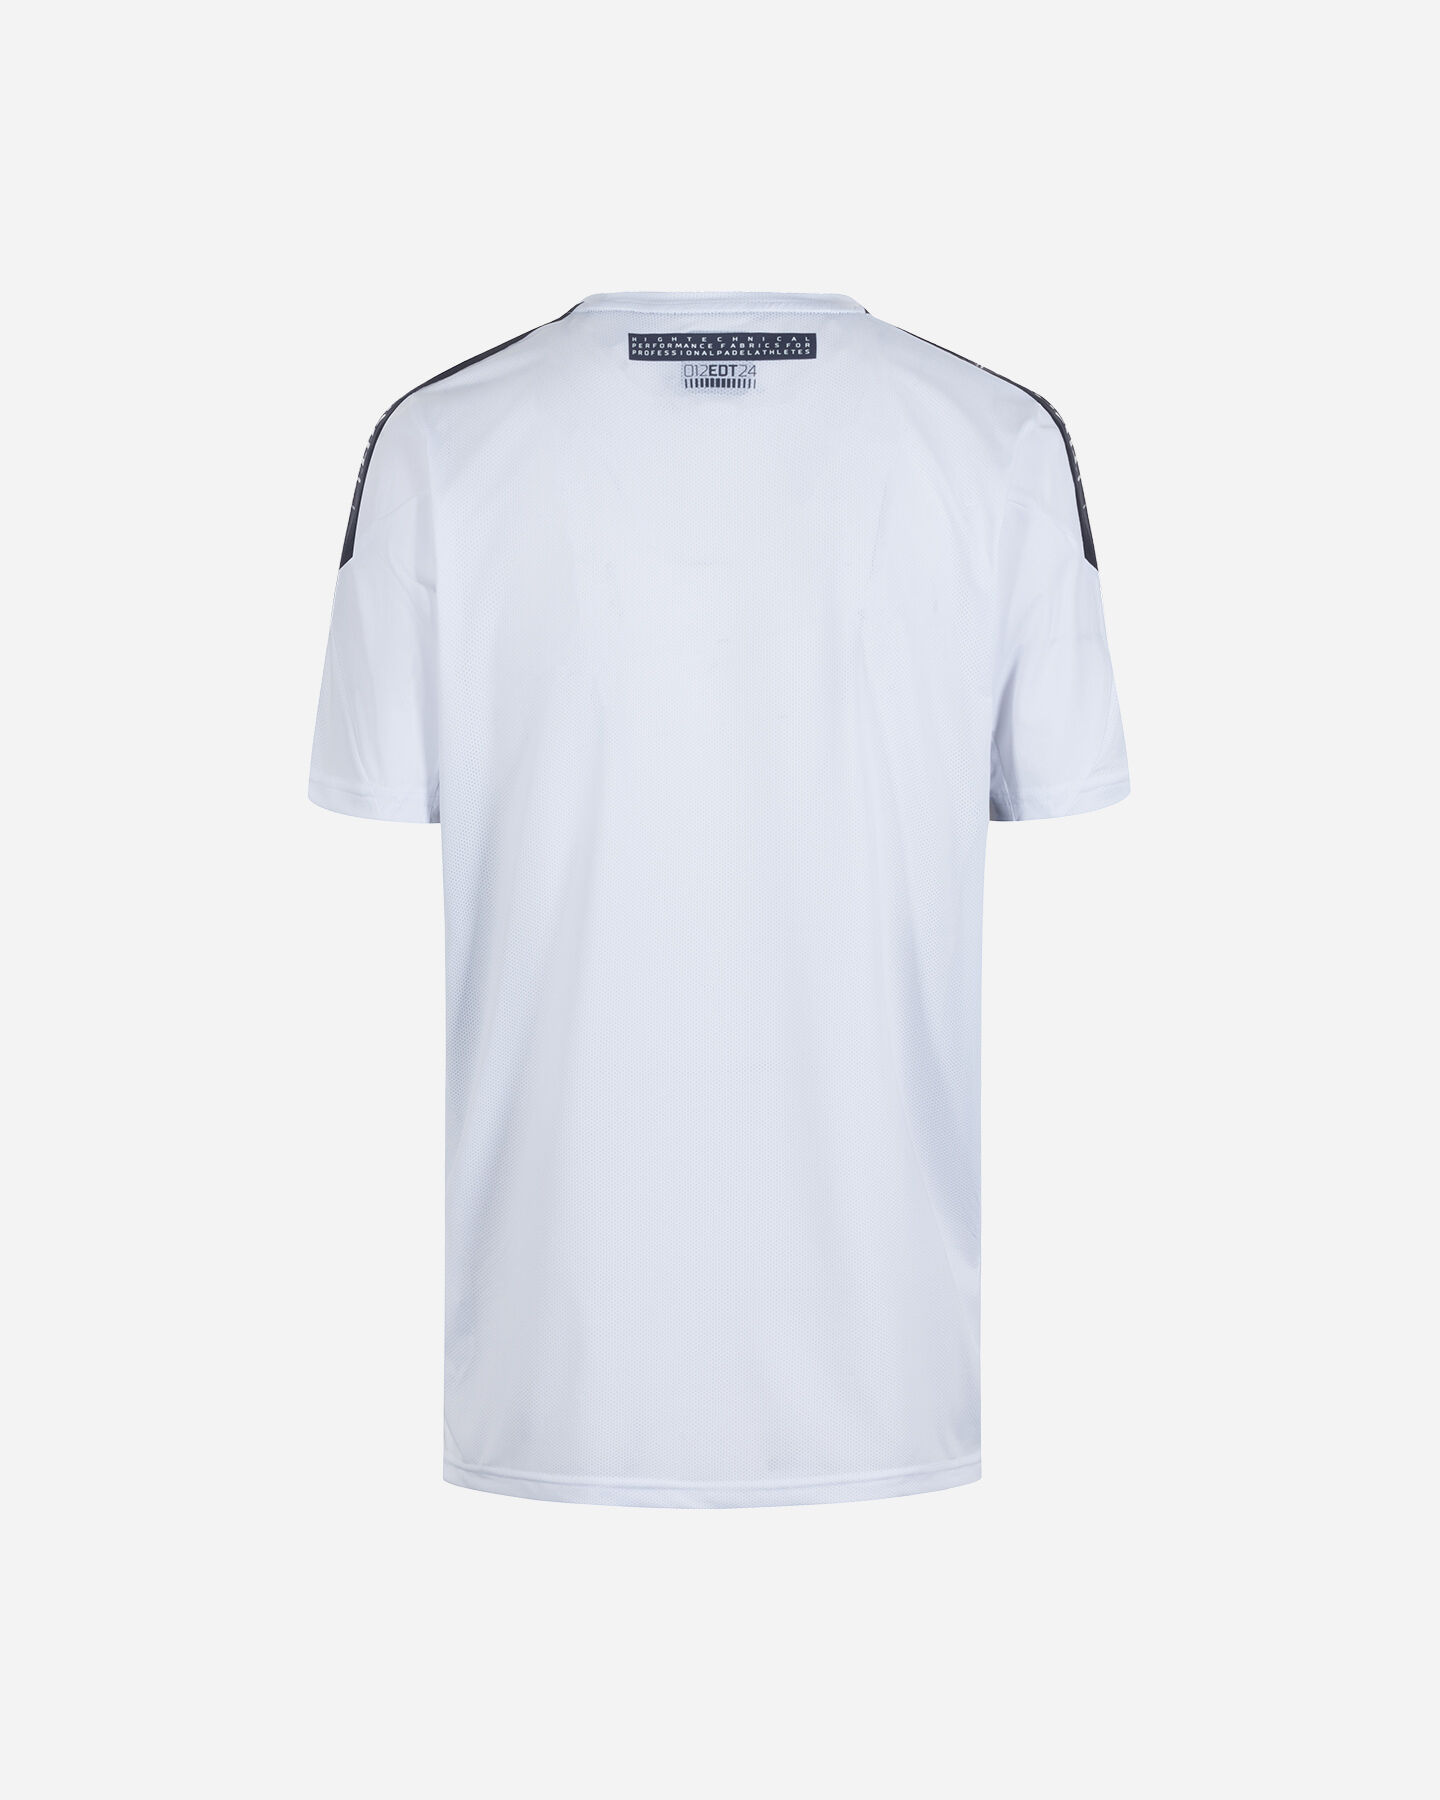  T-Shirt tennis BULLPADEL NIUE PADEL M S4132221|1|S scatto 1